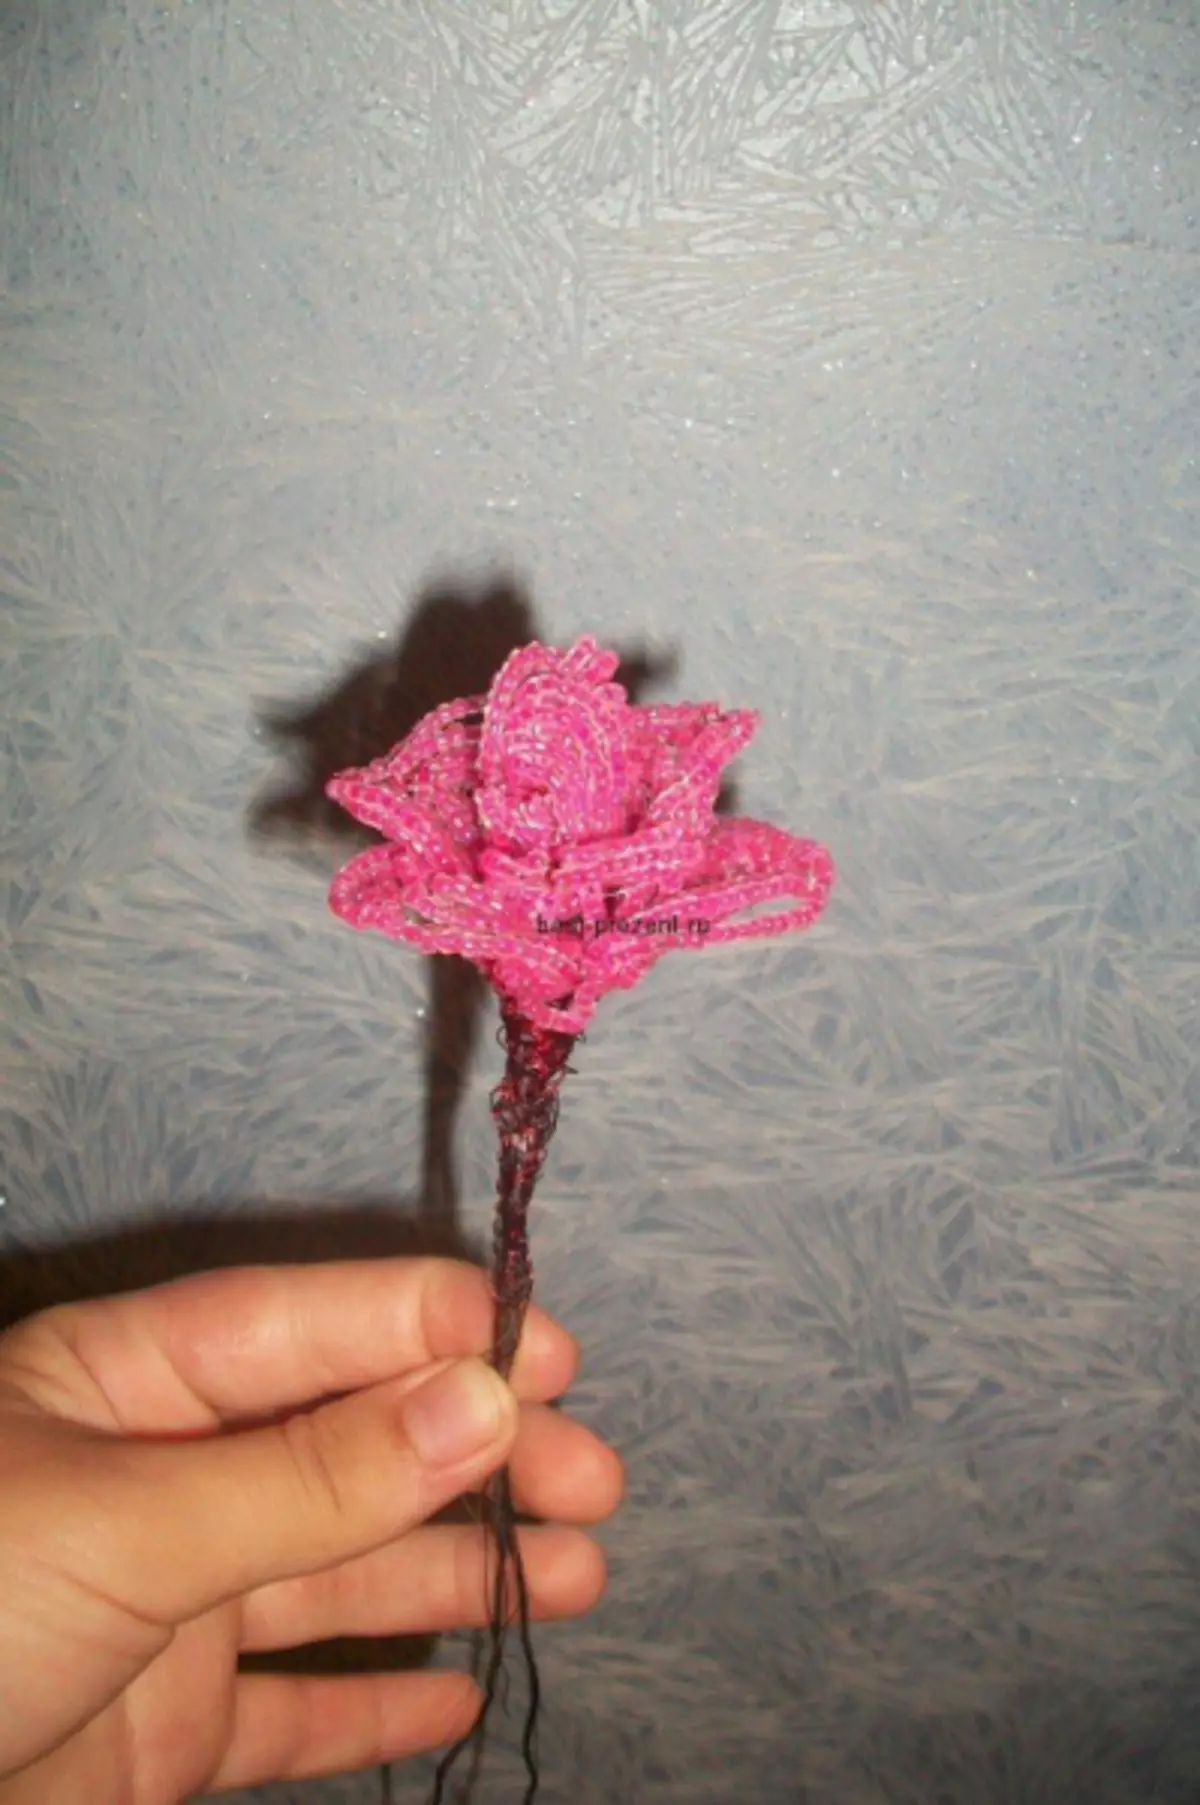 Flores frisadas para iniciantes: esquemas de tecelagem rosas simples com tutoriais em vídeo